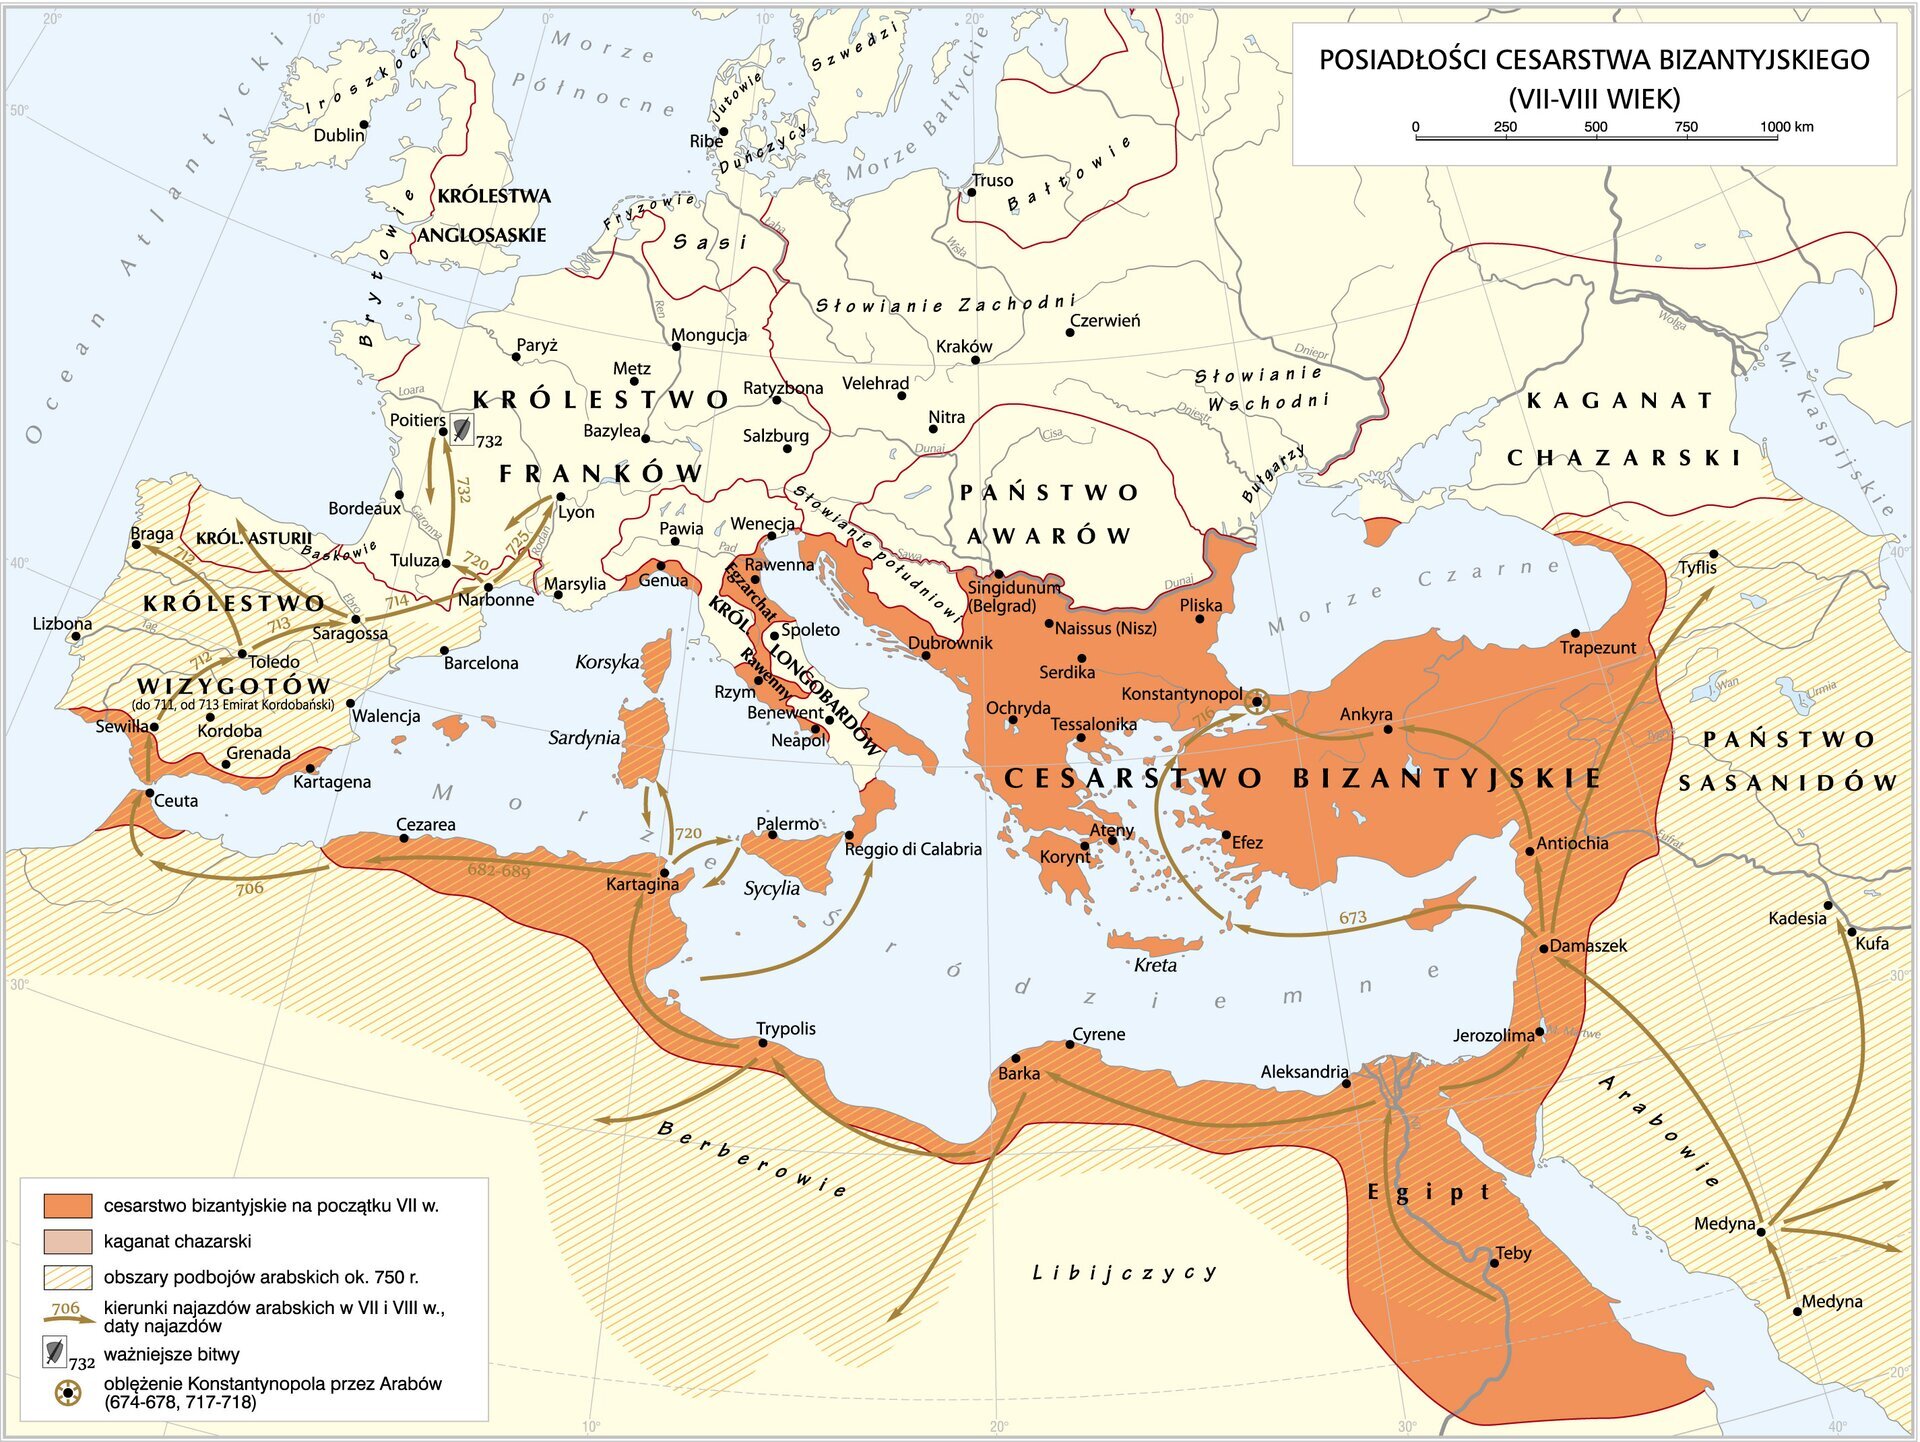 Mapa prezentująca zasięg terytorialny Cesarstwa Bizantyjskiego w VII i VIII wieku, obejmujący tereny Europy Południowej, Afryki Północnej oraz Bliskiego Wschodu. Wskazane są także obszary podbojów arabskich około 750 roku, czyli północna Afryka, Półwysep Iberyjski, Azja Mniejsza. Wskazane są także kierunki najazdów arabskich w VII i VIII wieku: w Azji Mniejszej (z Medyny do Kadesii, Kufy, Damaszku i dalej do Konstantynopola, Ankyry, Tyfisu), z Egiptu, z Teb do Jerozolimy, Aleksandrii i dalej do Barki, Trypolisu, Kartaginy, Celuty na półwysep Iberyjski (Sewila, Toledo, Braga, Saragossa) do Królestwa Franków (Narbonne, Lyon, Tuluza, Poitiers). A także z Kartaginy na Sycylię, Sardynię i Półwysep Apeniński. Zaznaczono także bitwę w Poitiers (732) oraz oblężenie Konstantynopol przez Arabów w latach 674-678 i 717-718.